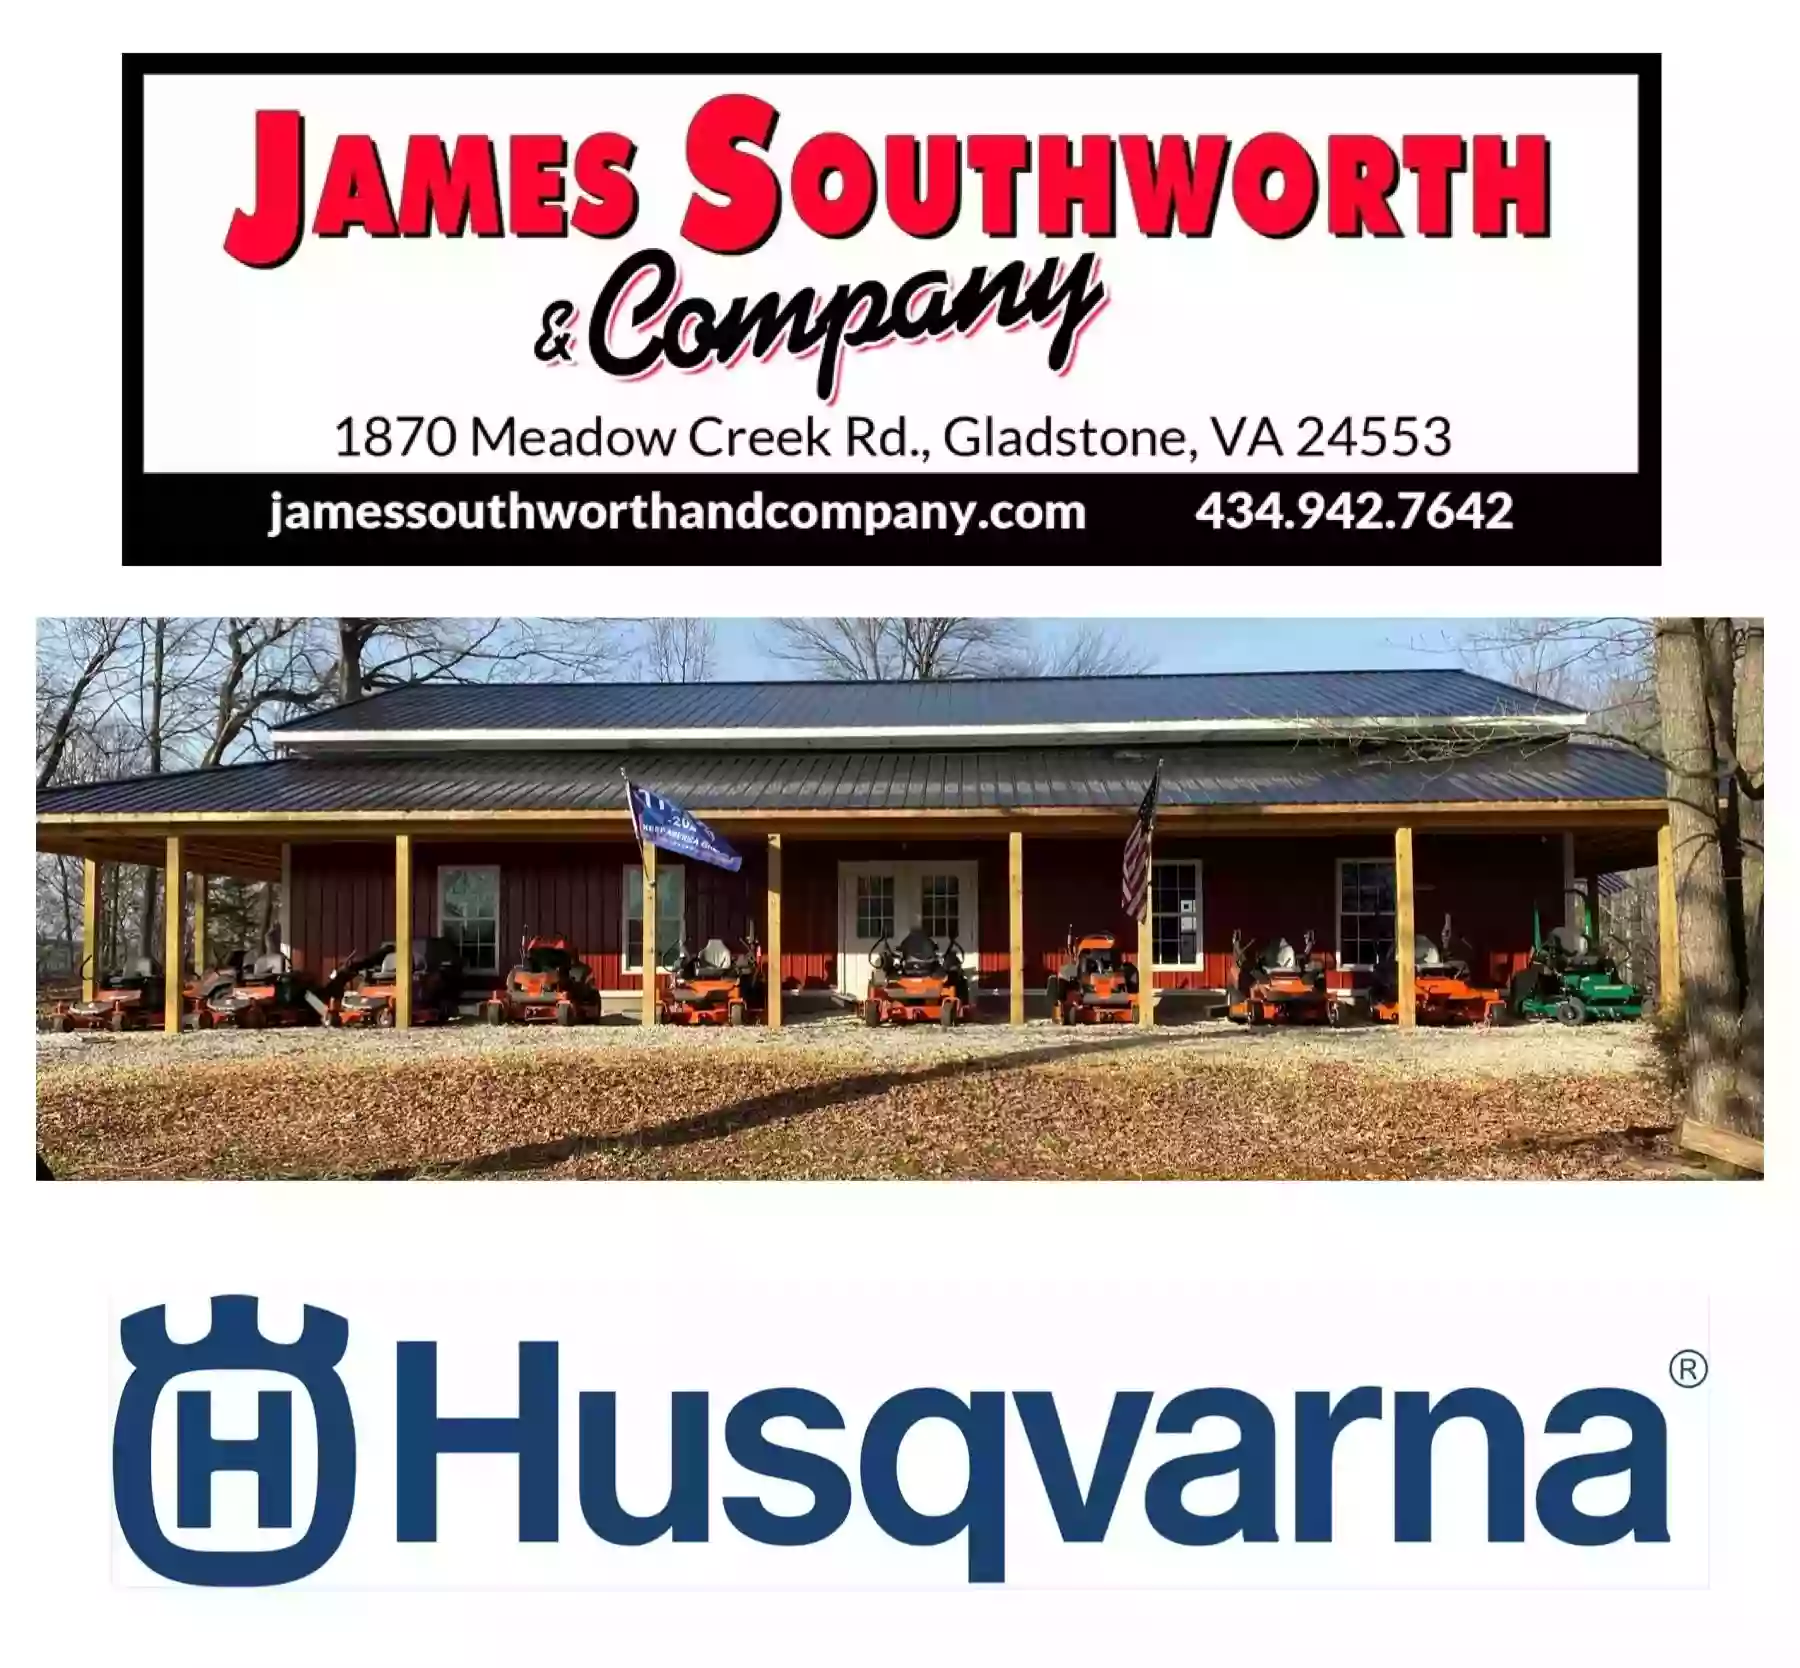 James Southworth & Company, LLC